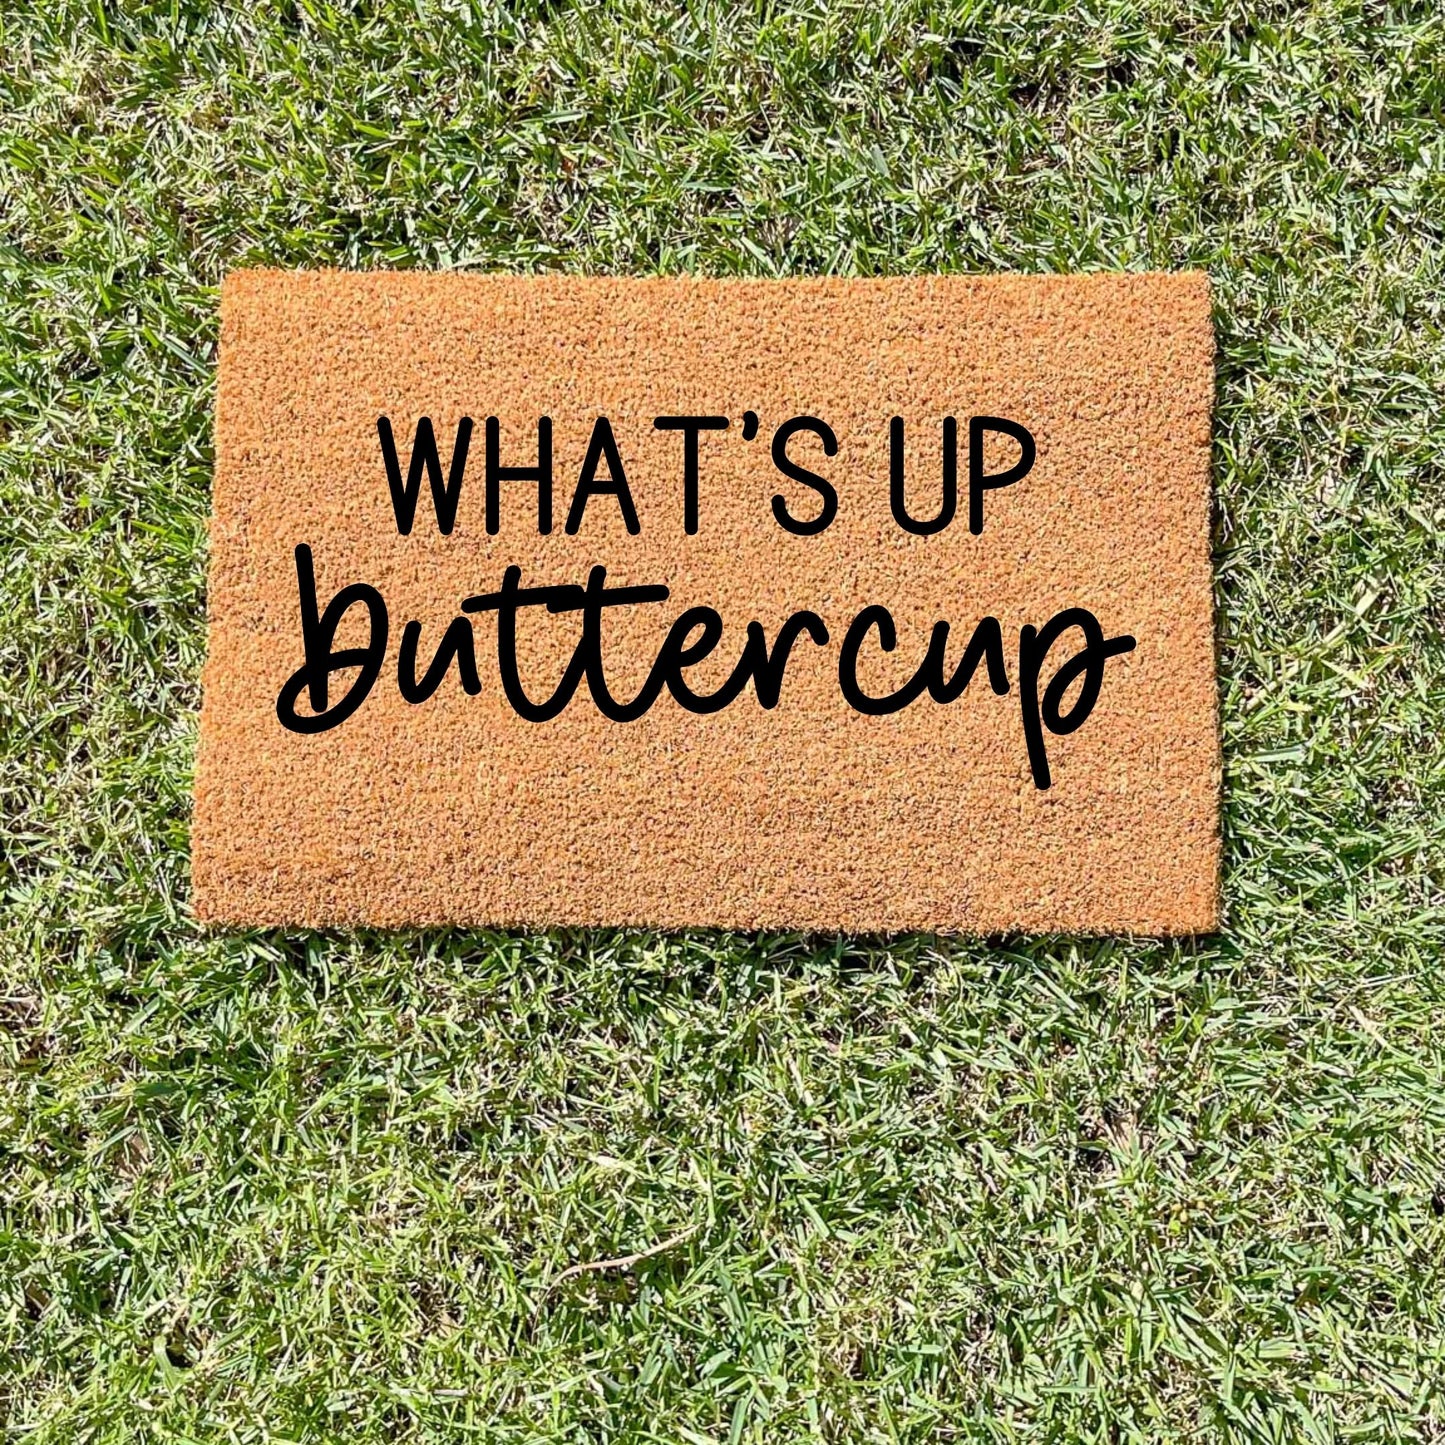 What's up buttercup doormat, sassy doormat, custom doormat, personalised doormat